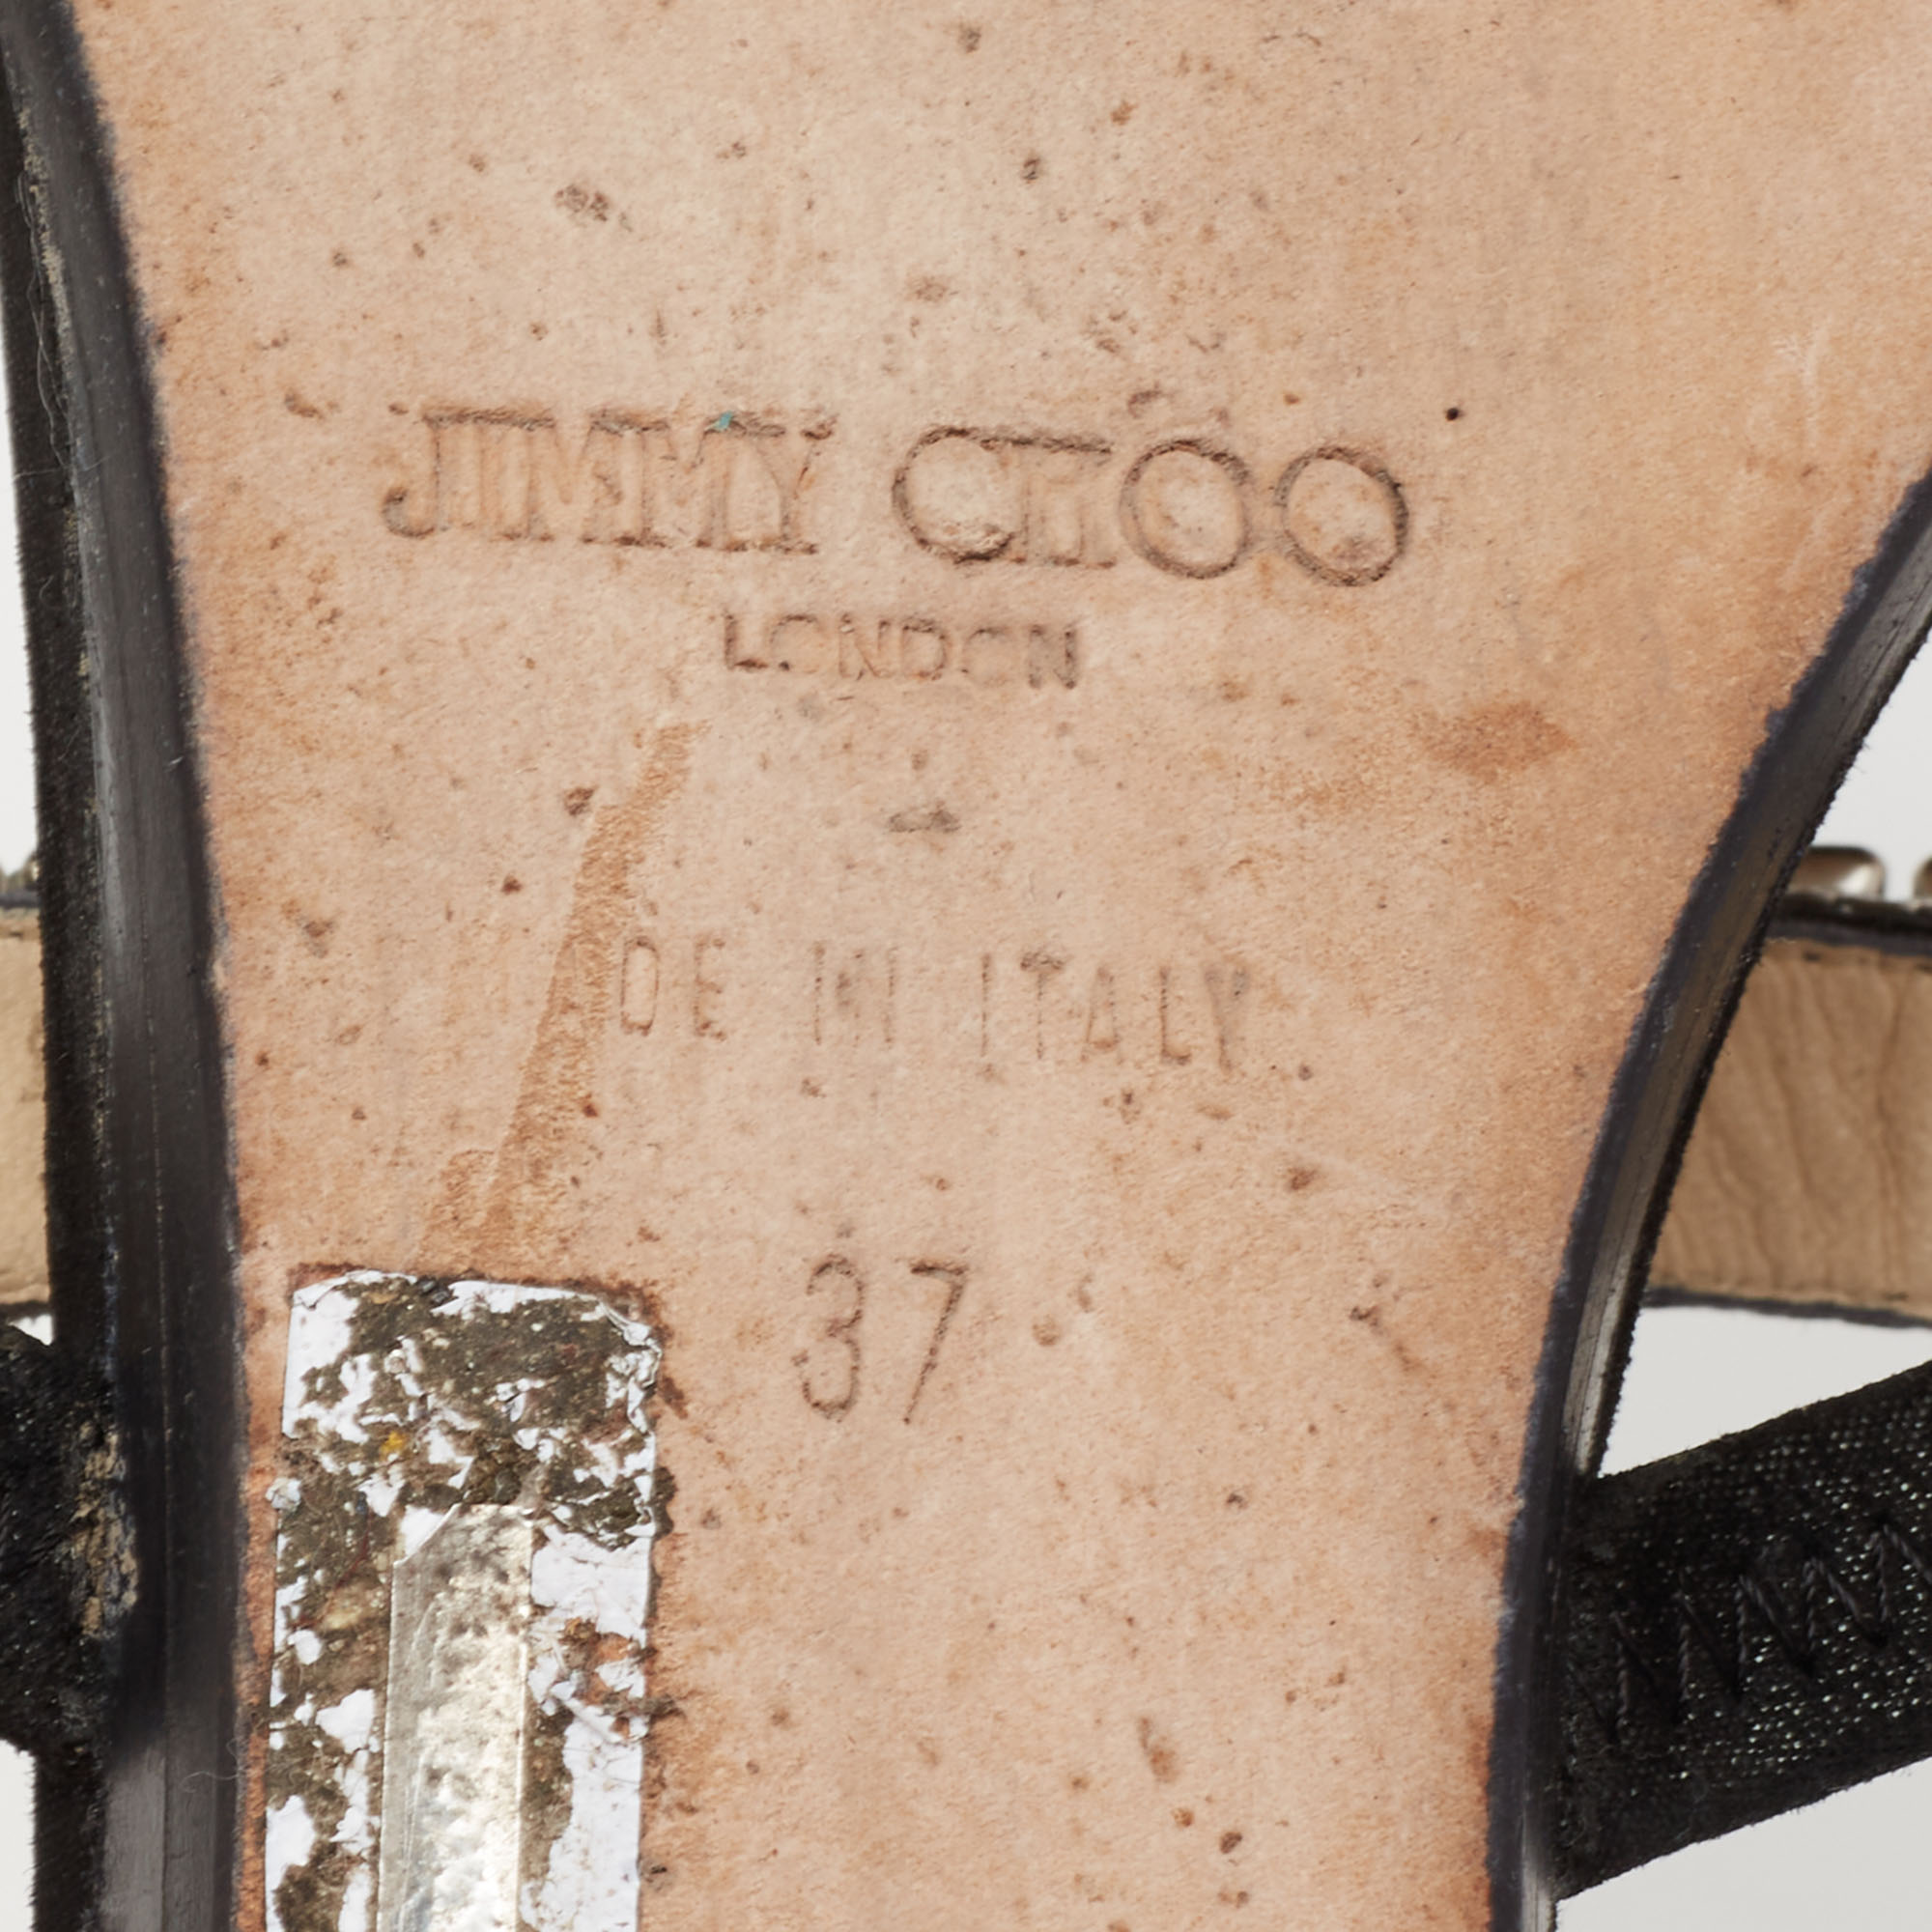 Jimmy Choo Black Suede Crystal Embellished Flat Sandals Size 37